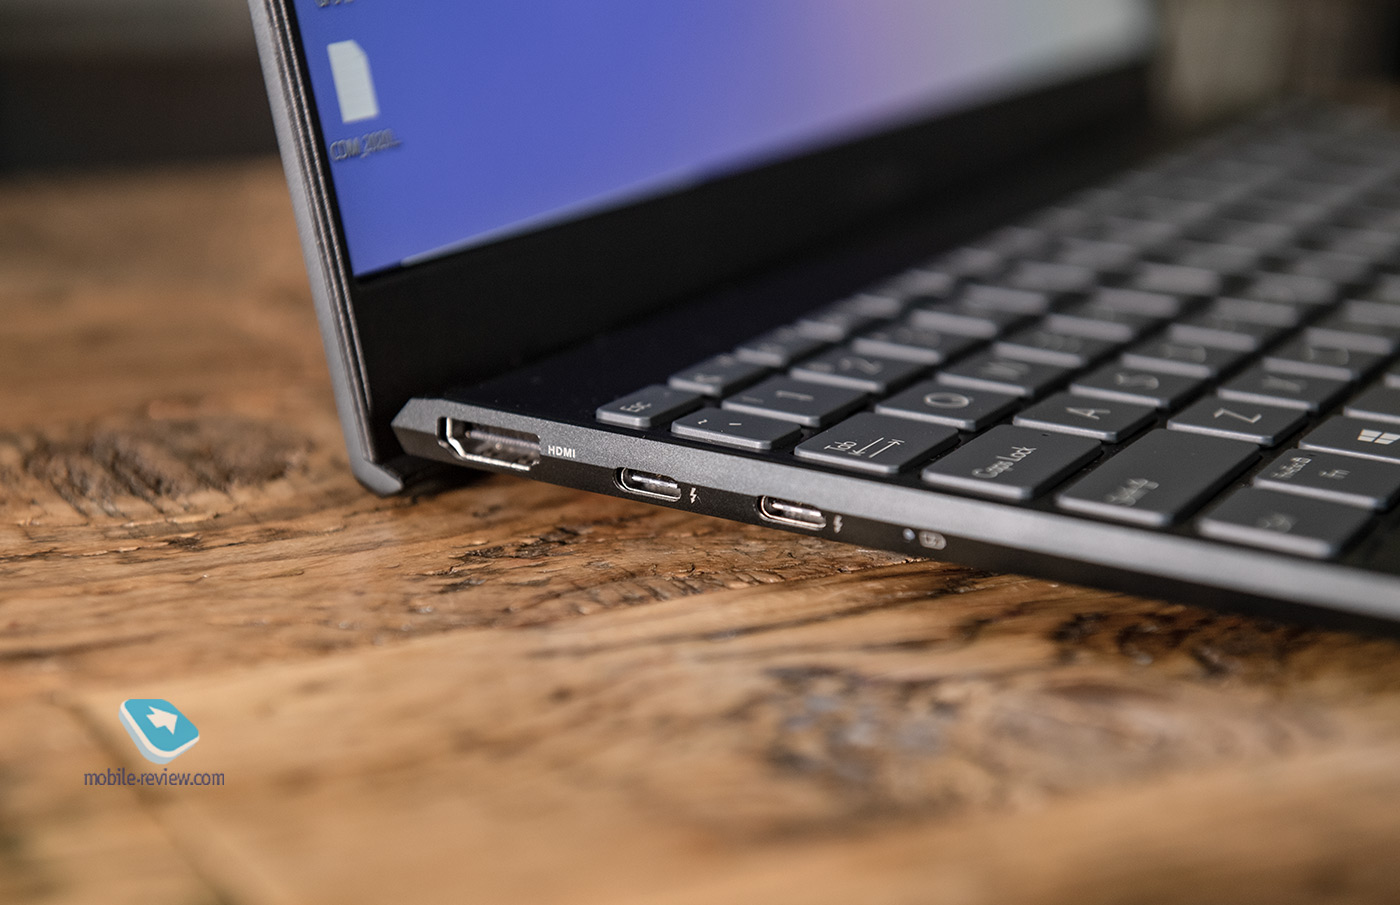 7 главных преимуществ ноутбуков ASUS ZenBook 13|14 над другими ноутбуками